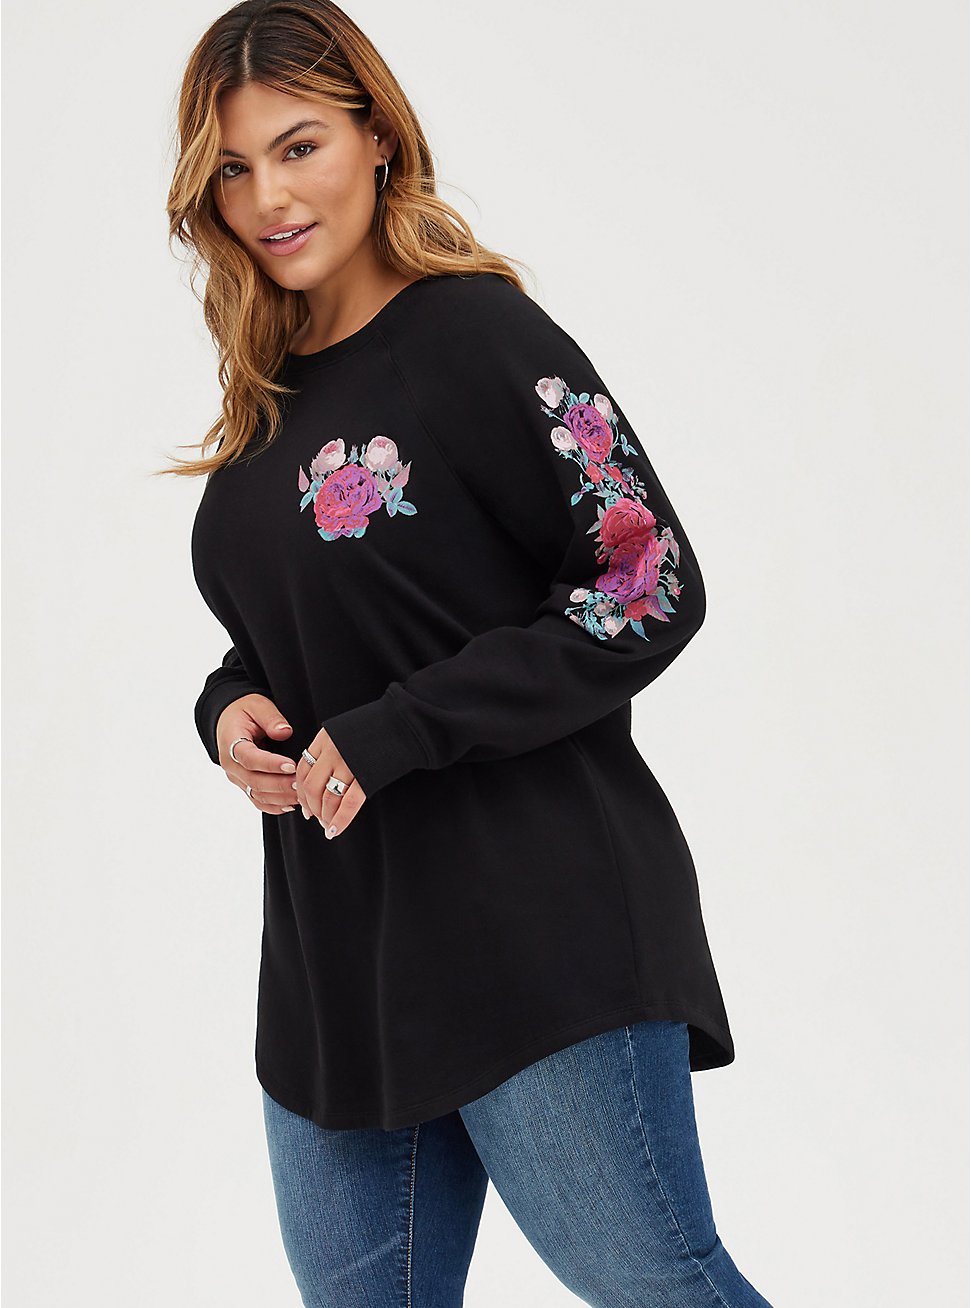 Tunic Sweatshirt - Cozy Fleece Floral Black, DEEP BLACK, hi-res